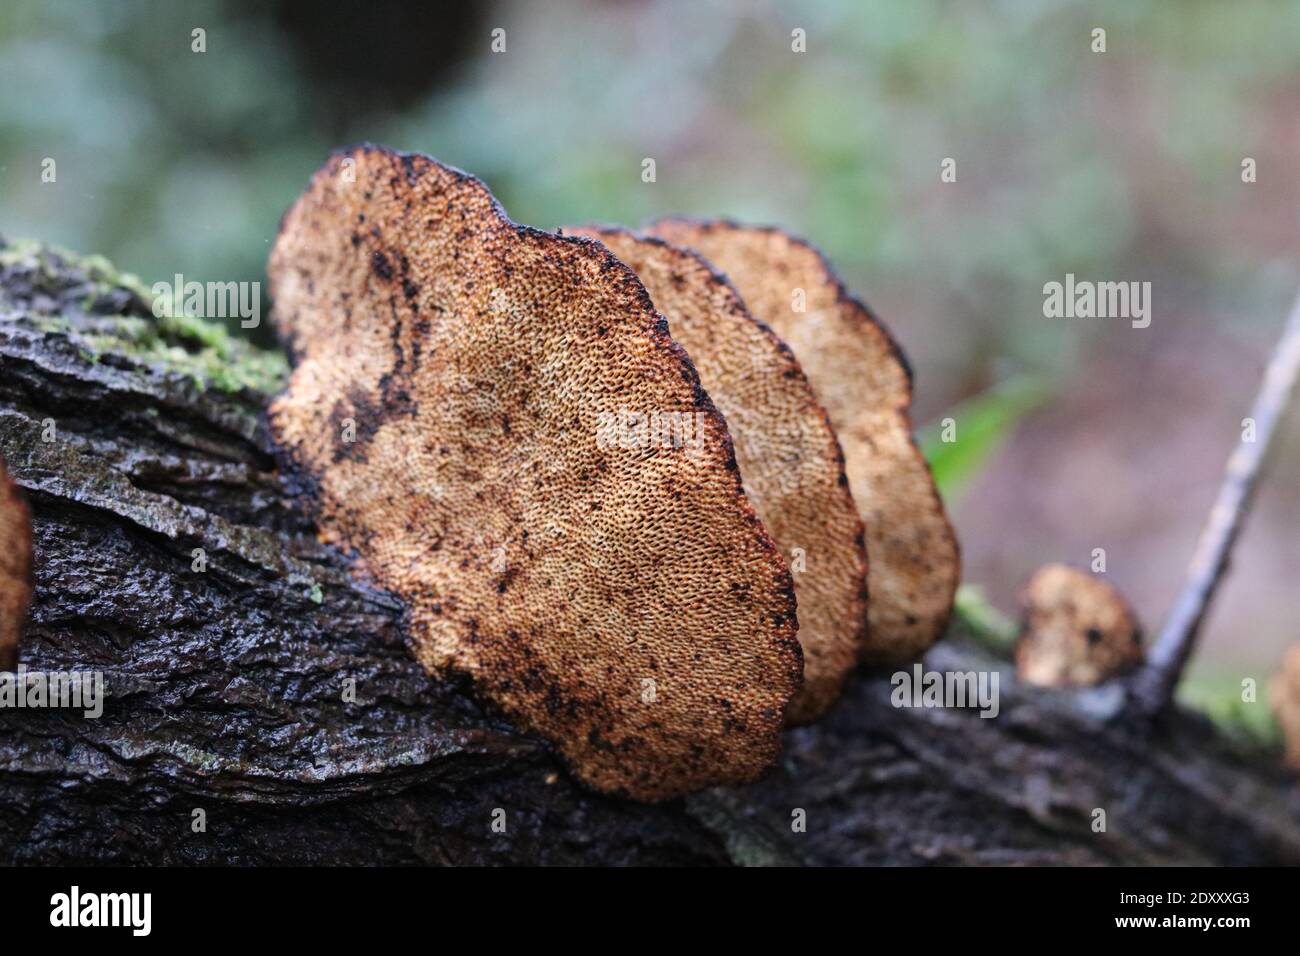 Row of inonotus tree fungus on damp tree trunk with copy space Stock Photo